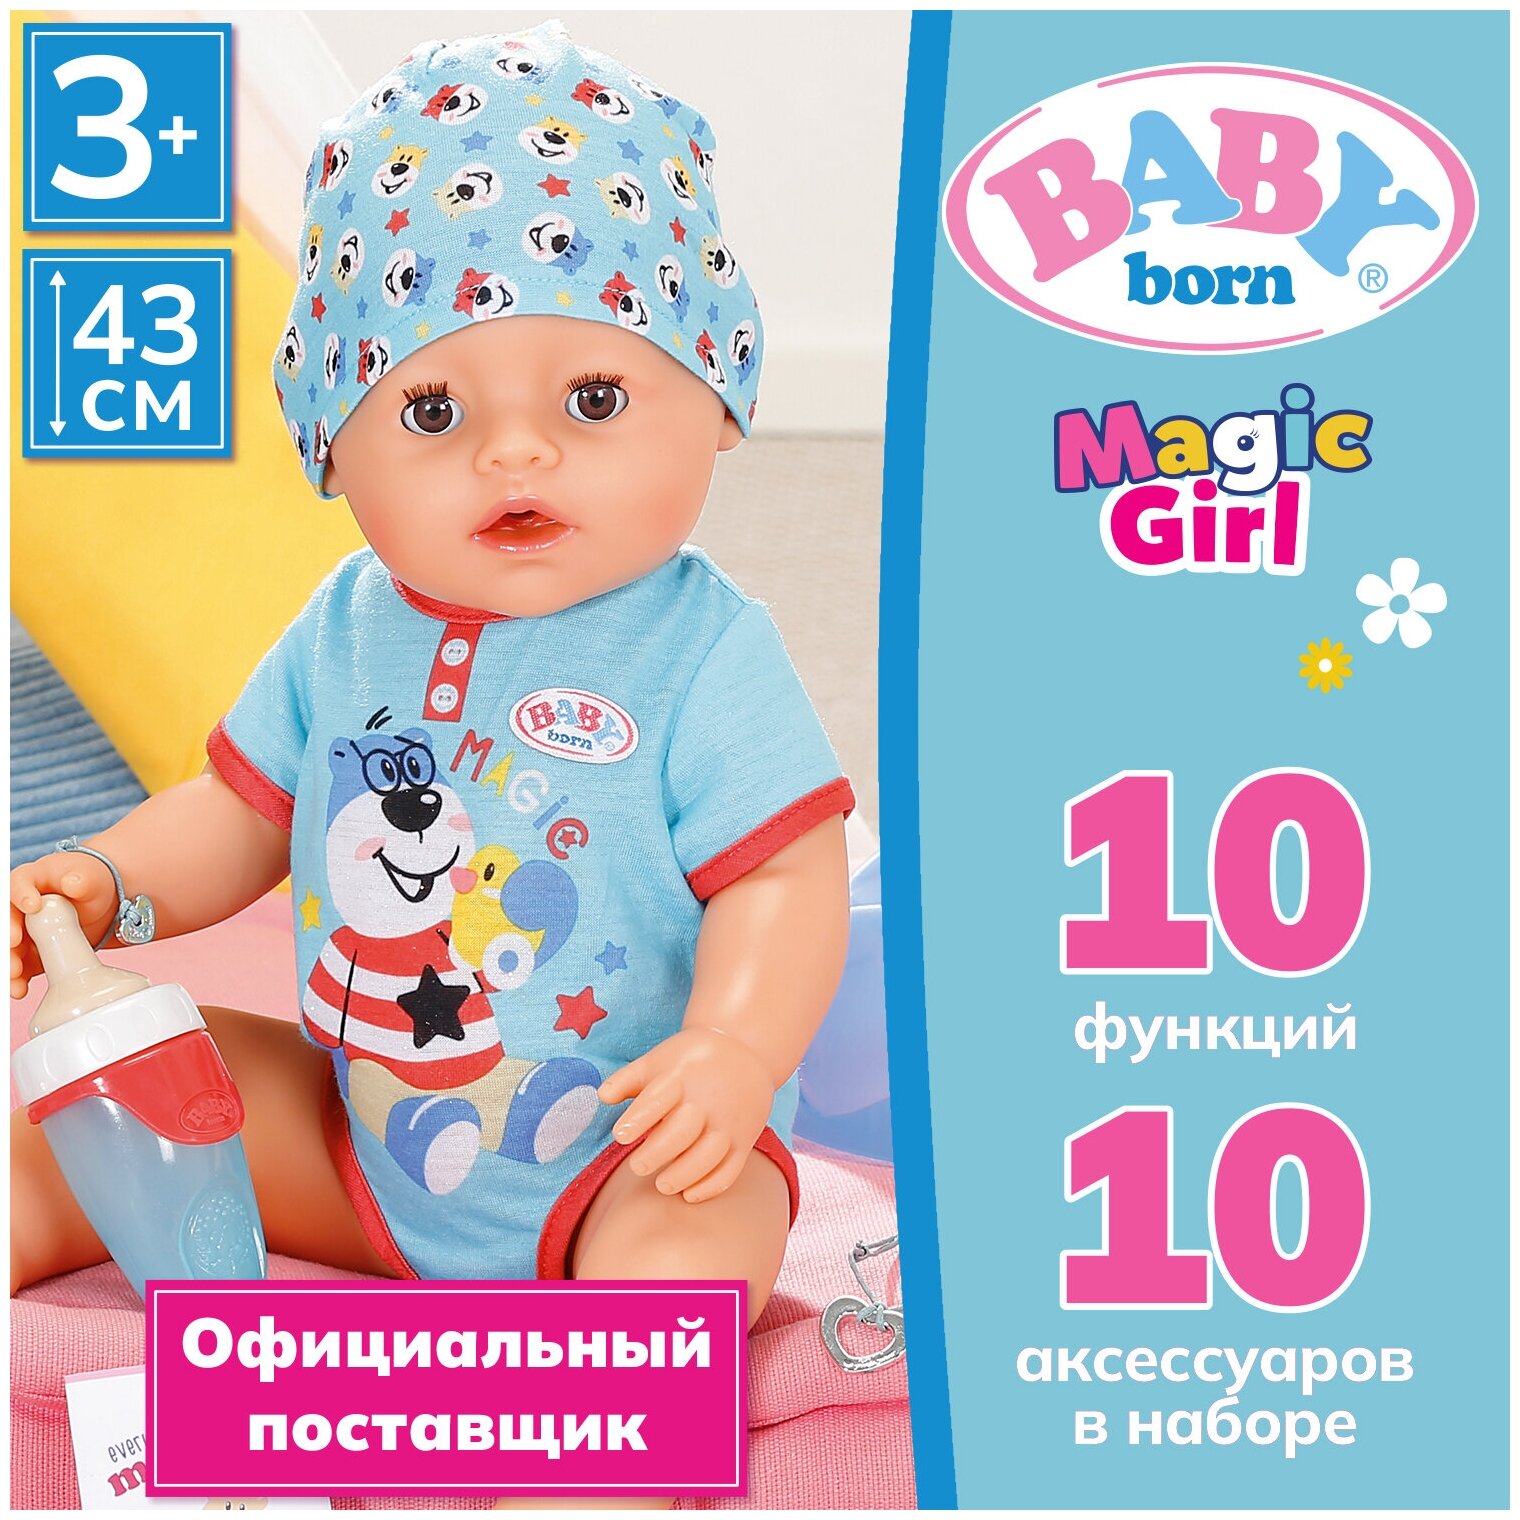 Беби борн. Интерактивная кукла мальчик с магическими глазками 43 см. BABY born